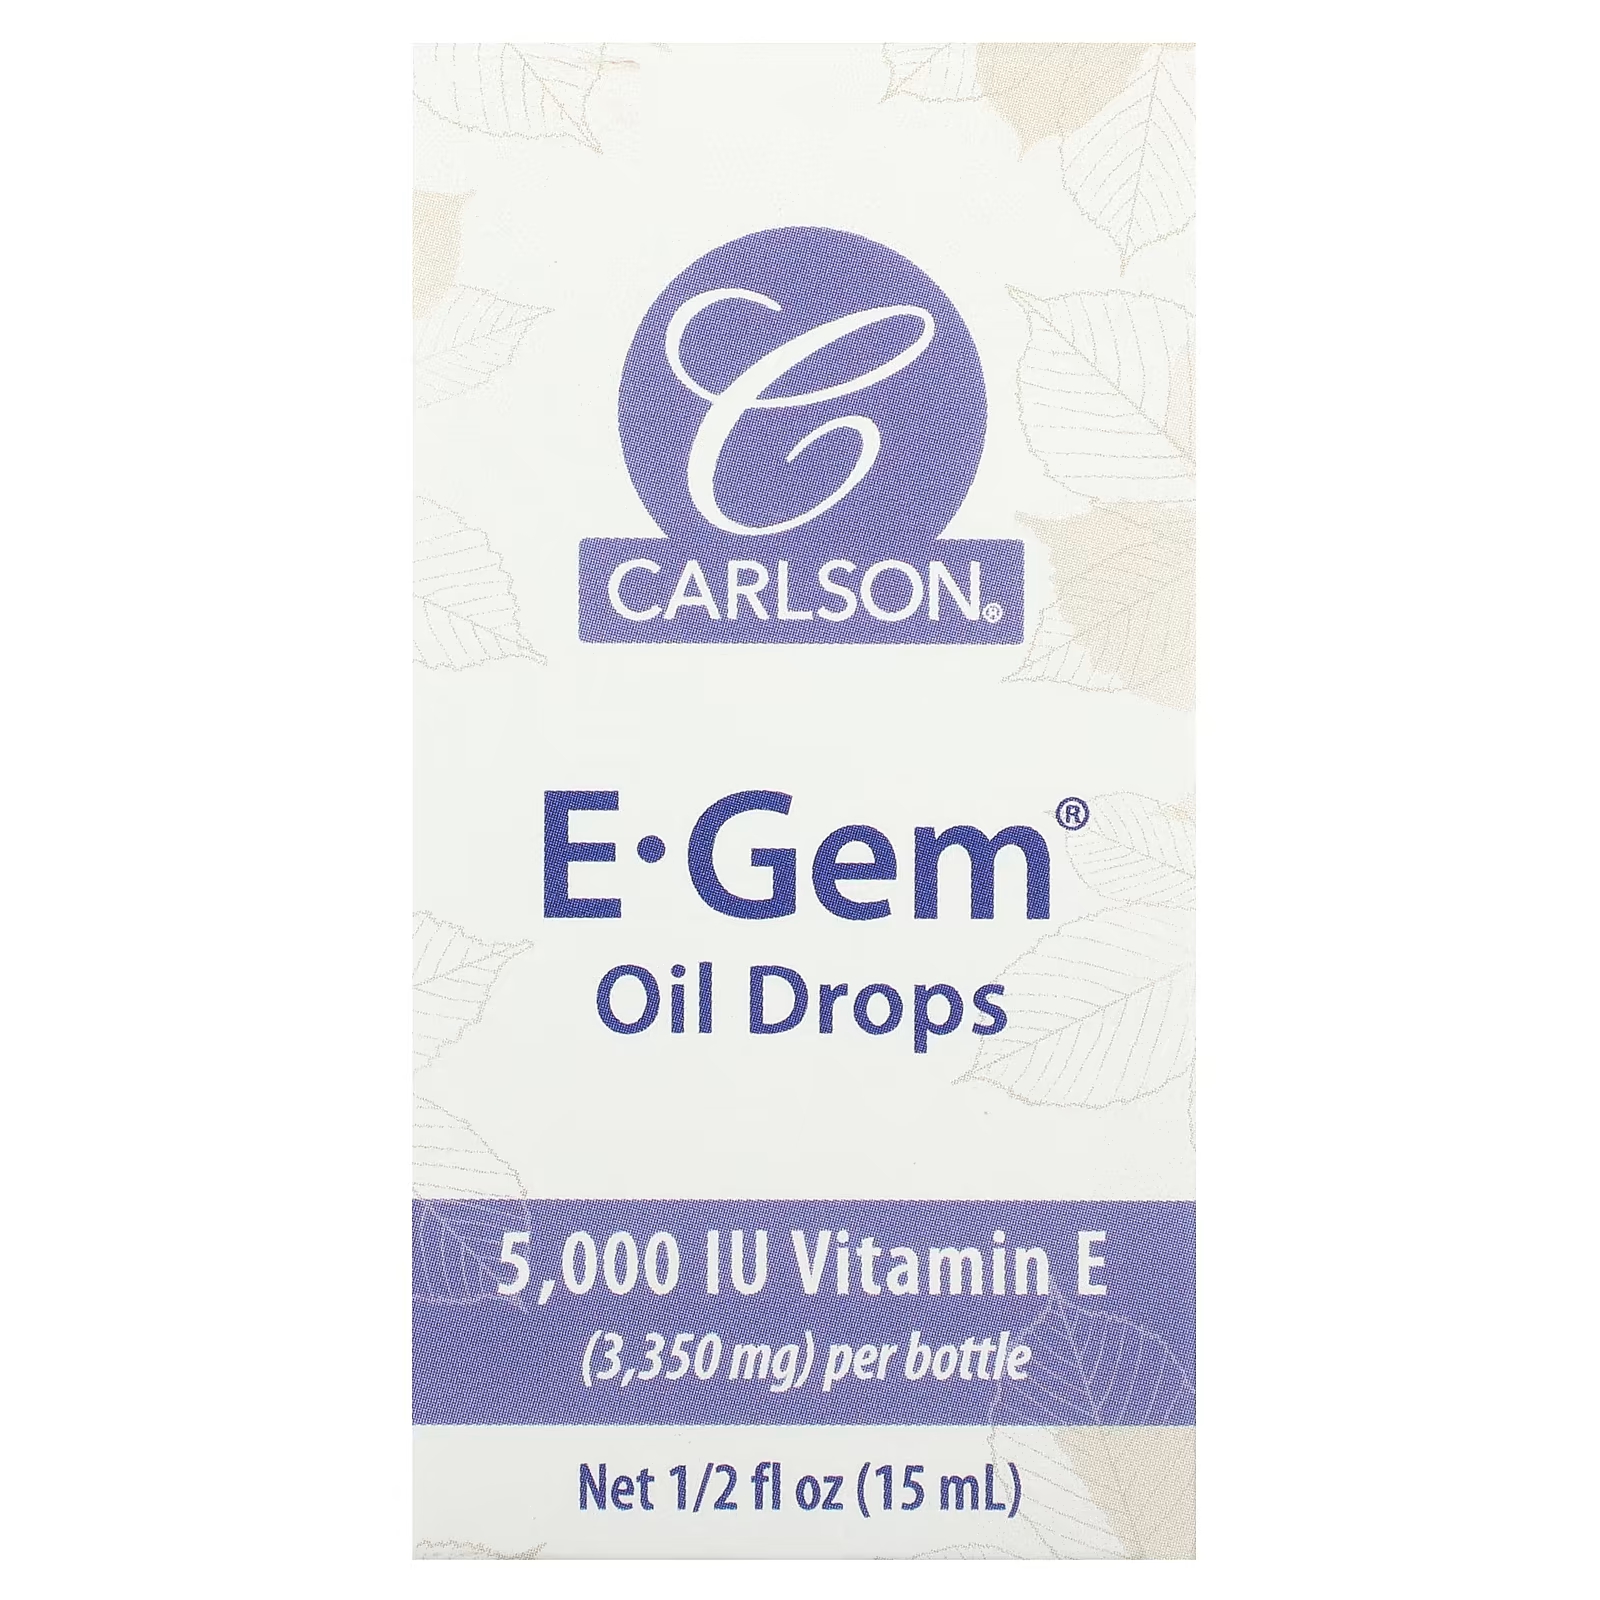 Пищевая добавка Carlson E-Gem Oil Drops с витамином Е, 15 мл i̇p led daylight 100 led s can be added 10mt ip44